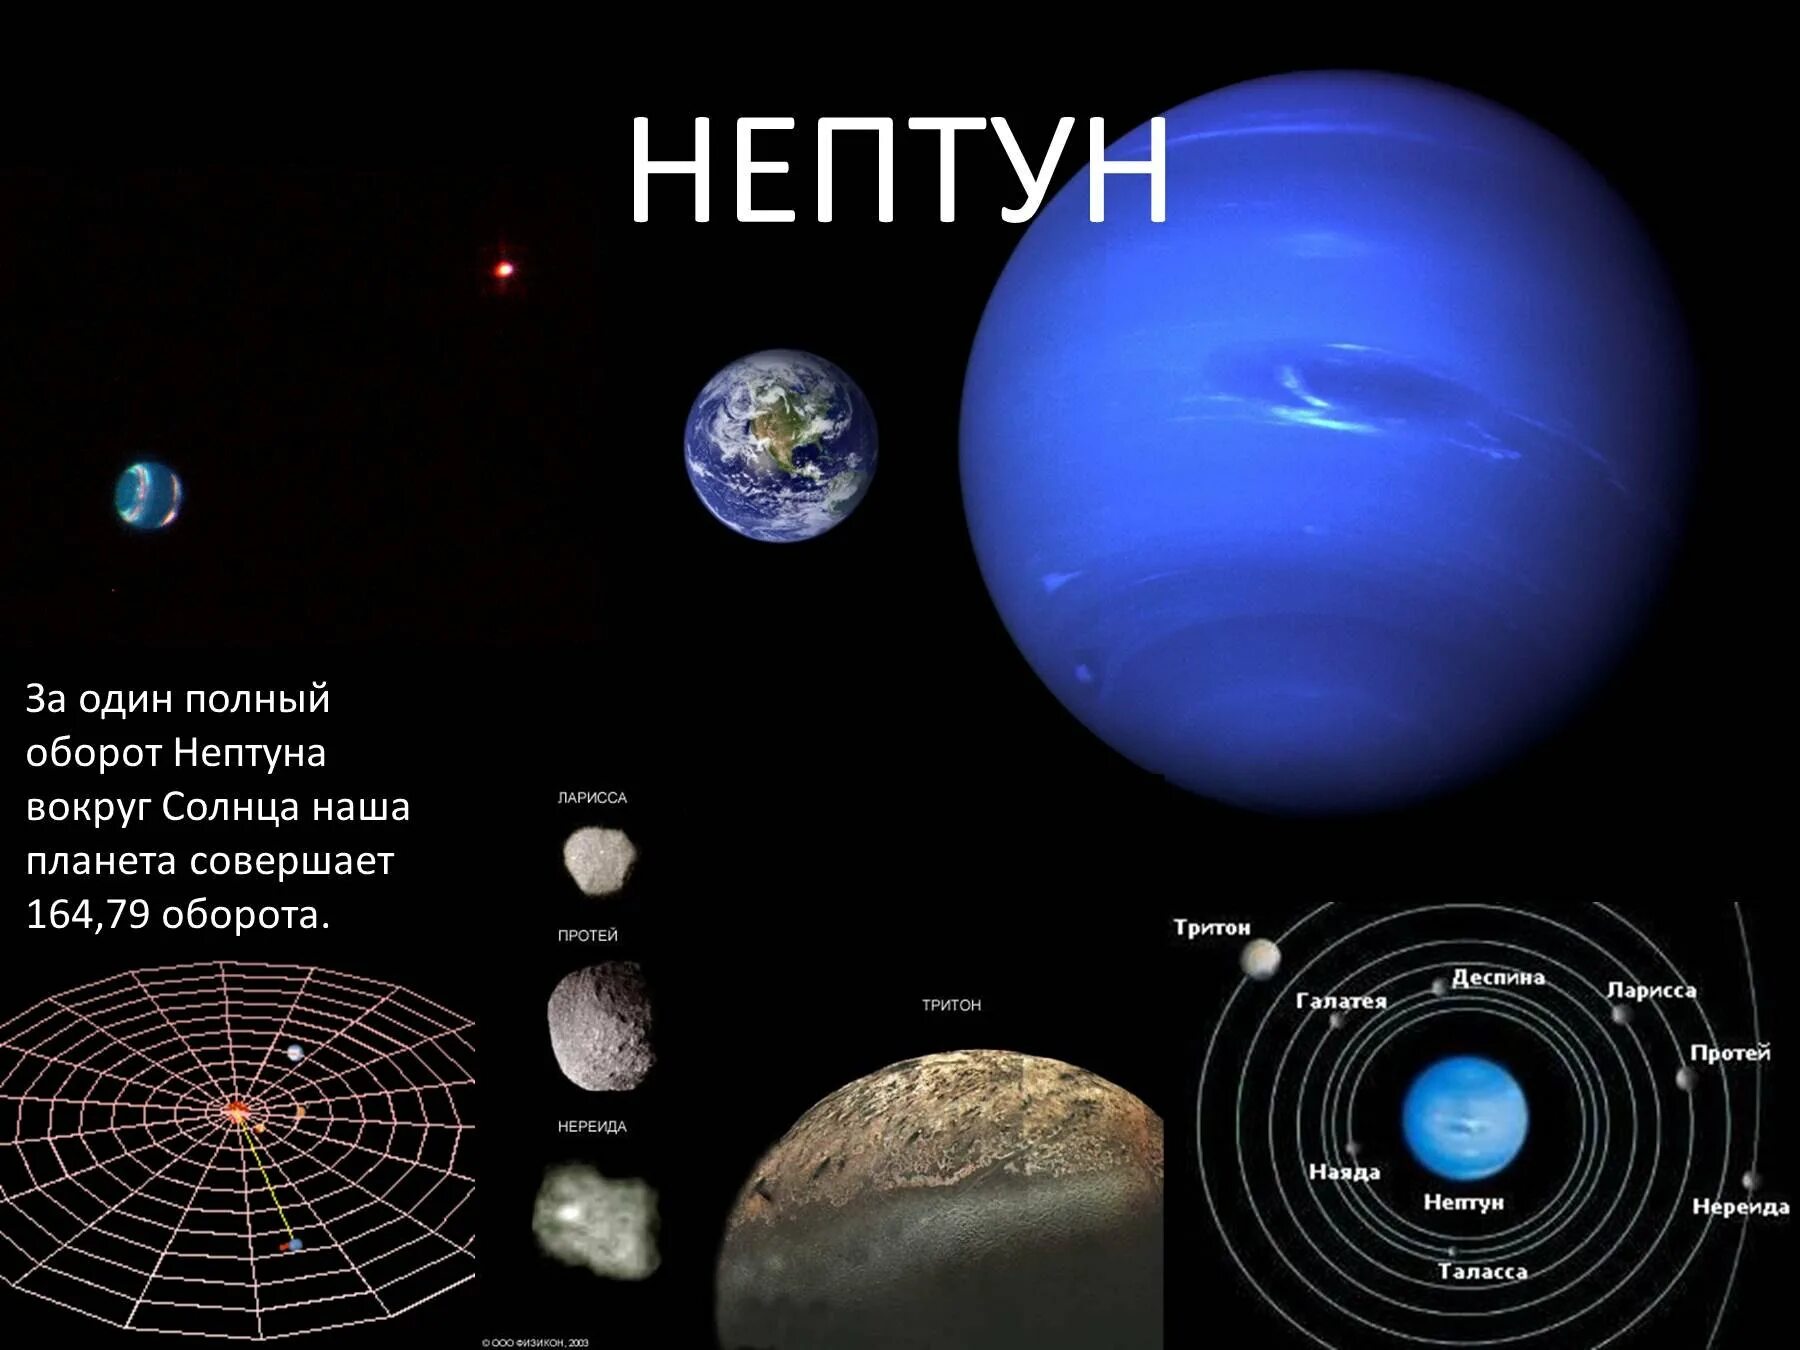 Скорость обращения вокруг солнца планеты нептун. Орбита Нептуна вокруг солнца. Нептун. Нептун оборот вокруг солнца. Вращение Нептуна вокруг солнца.